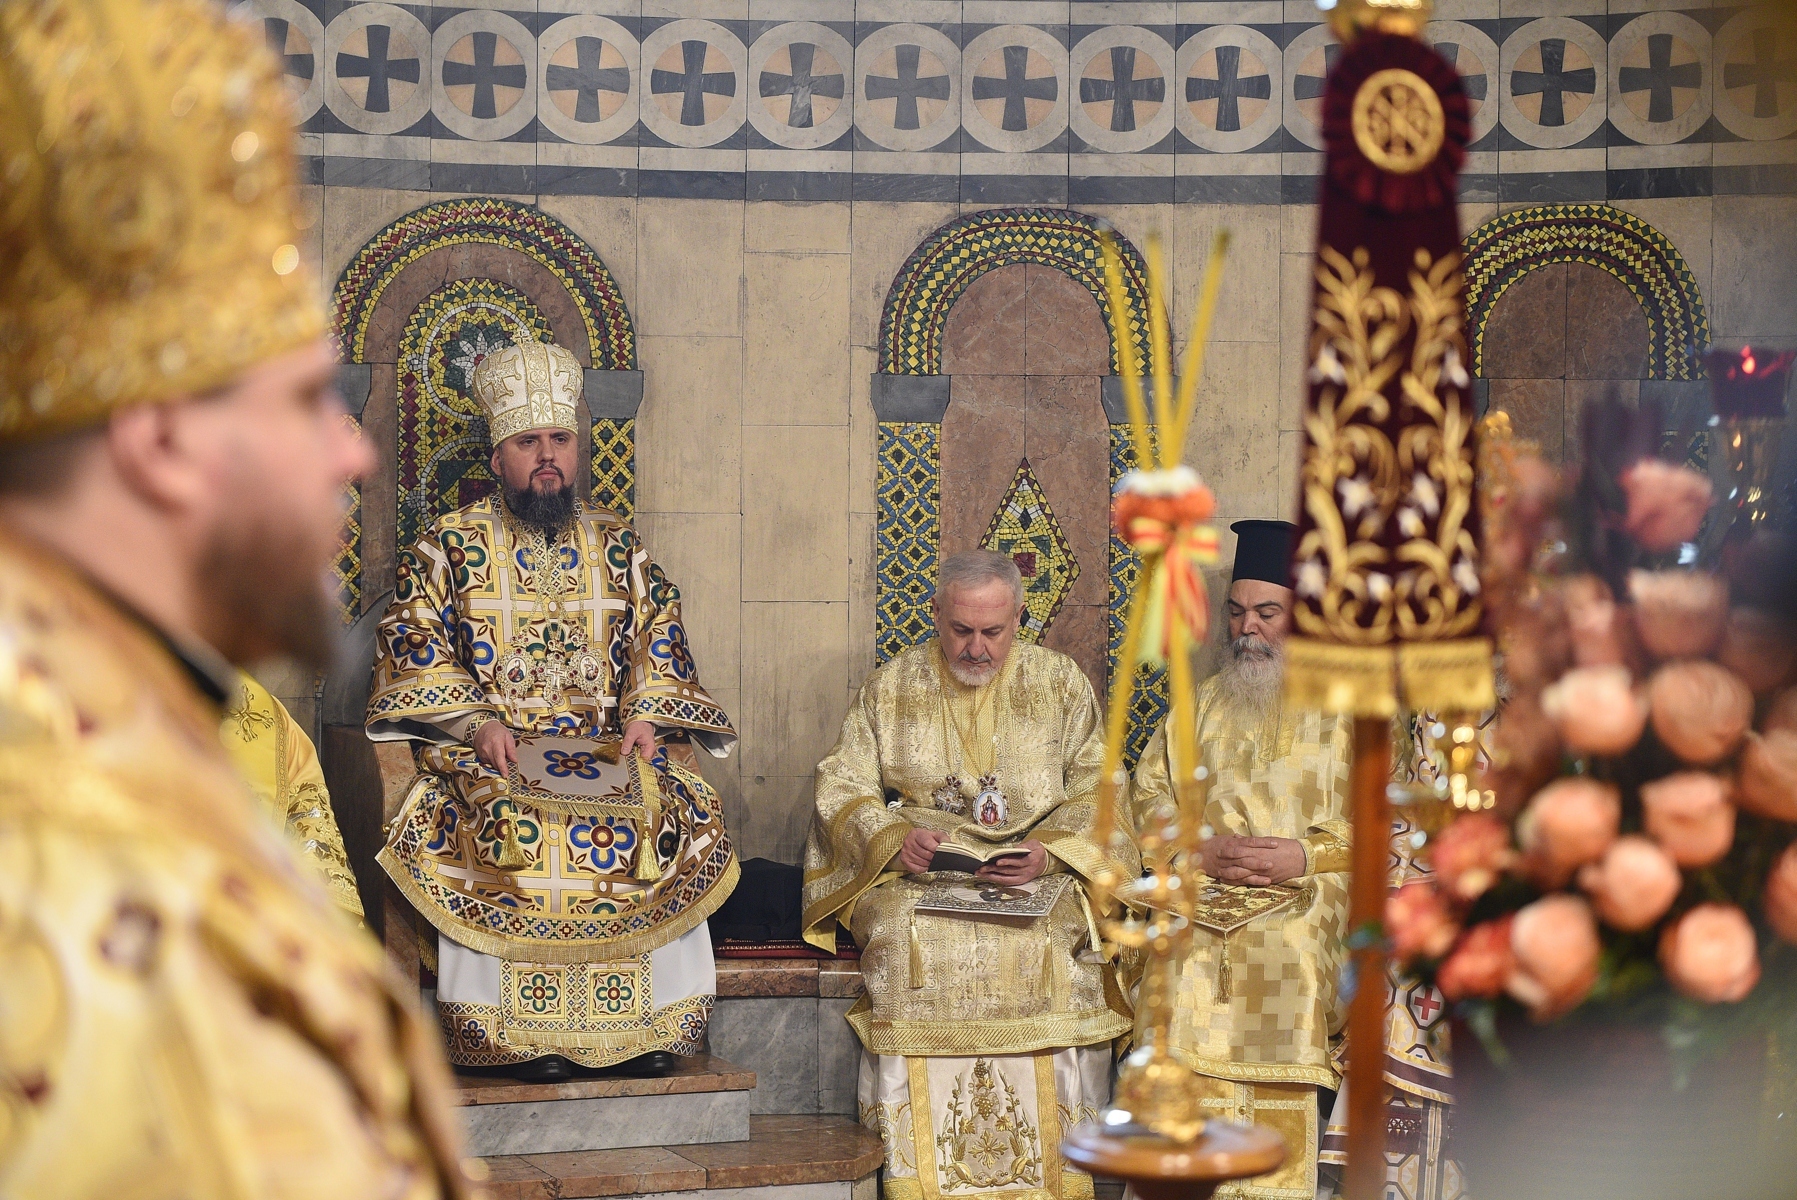 Από την Επίσκεψη στο Κίεβο του Σεβασμιωτάτου Μητροπολίτου Γαλλίας  κ.κ. Εμμανουήλ ως Εκπρόσωπου του Οικουμενικού Πατριαρχείου της Μητρός Εκκλησίας επί τη ευκαιρία των Εορταστικών Εκδηλώσεων ενός Έτους Αναγνωρίσεως της Αυτοκεφάλου Εκκλησίας της Ουκρανίας